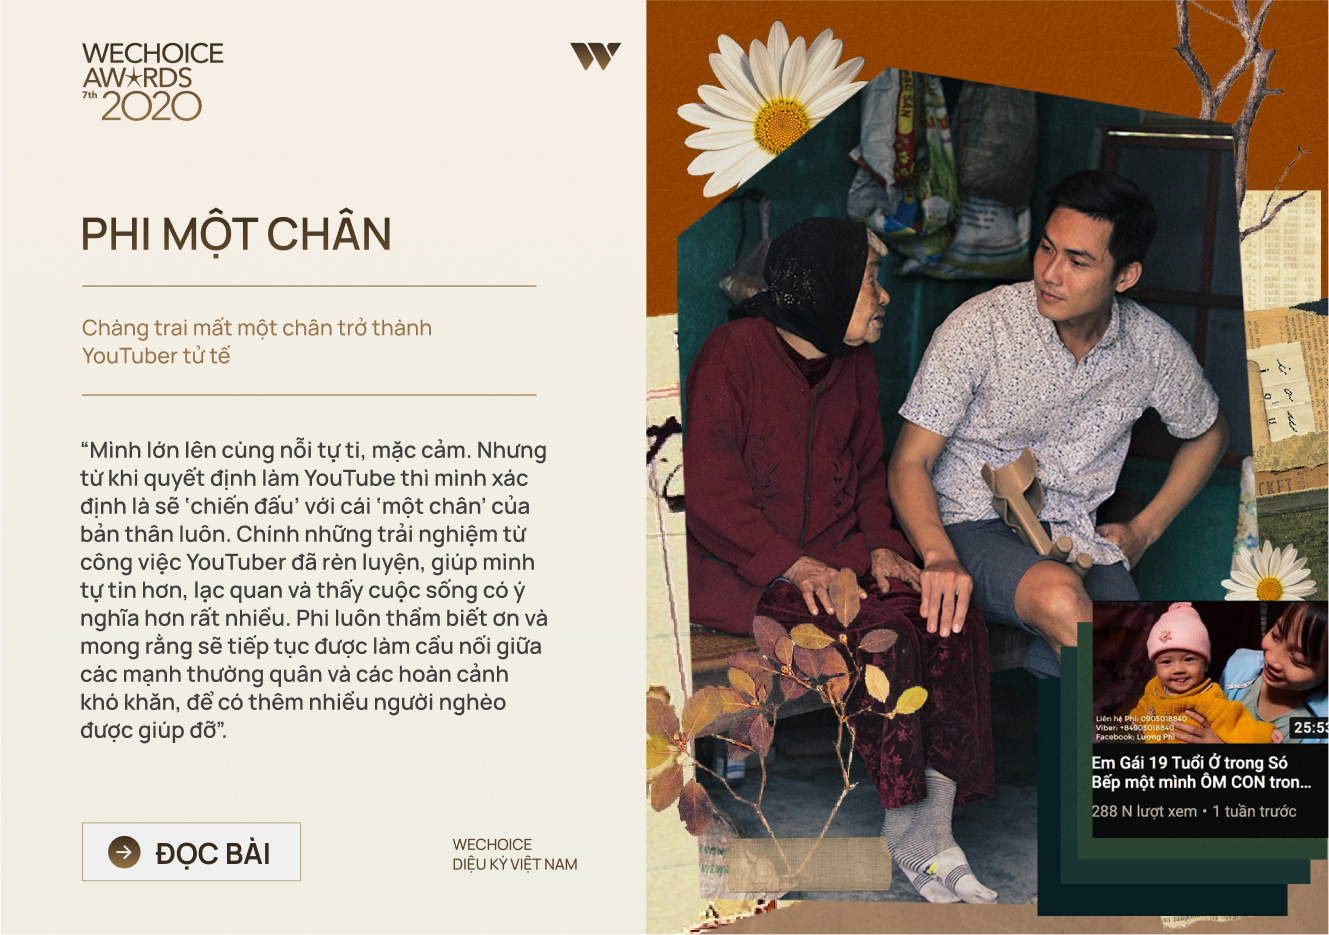 20 đề cử nhân vật truyền cảm hứng của WeChoice Awards 2020: Những câu chuyện tạo nên Diệu kỳ Việt Nam - Ảnh 15.